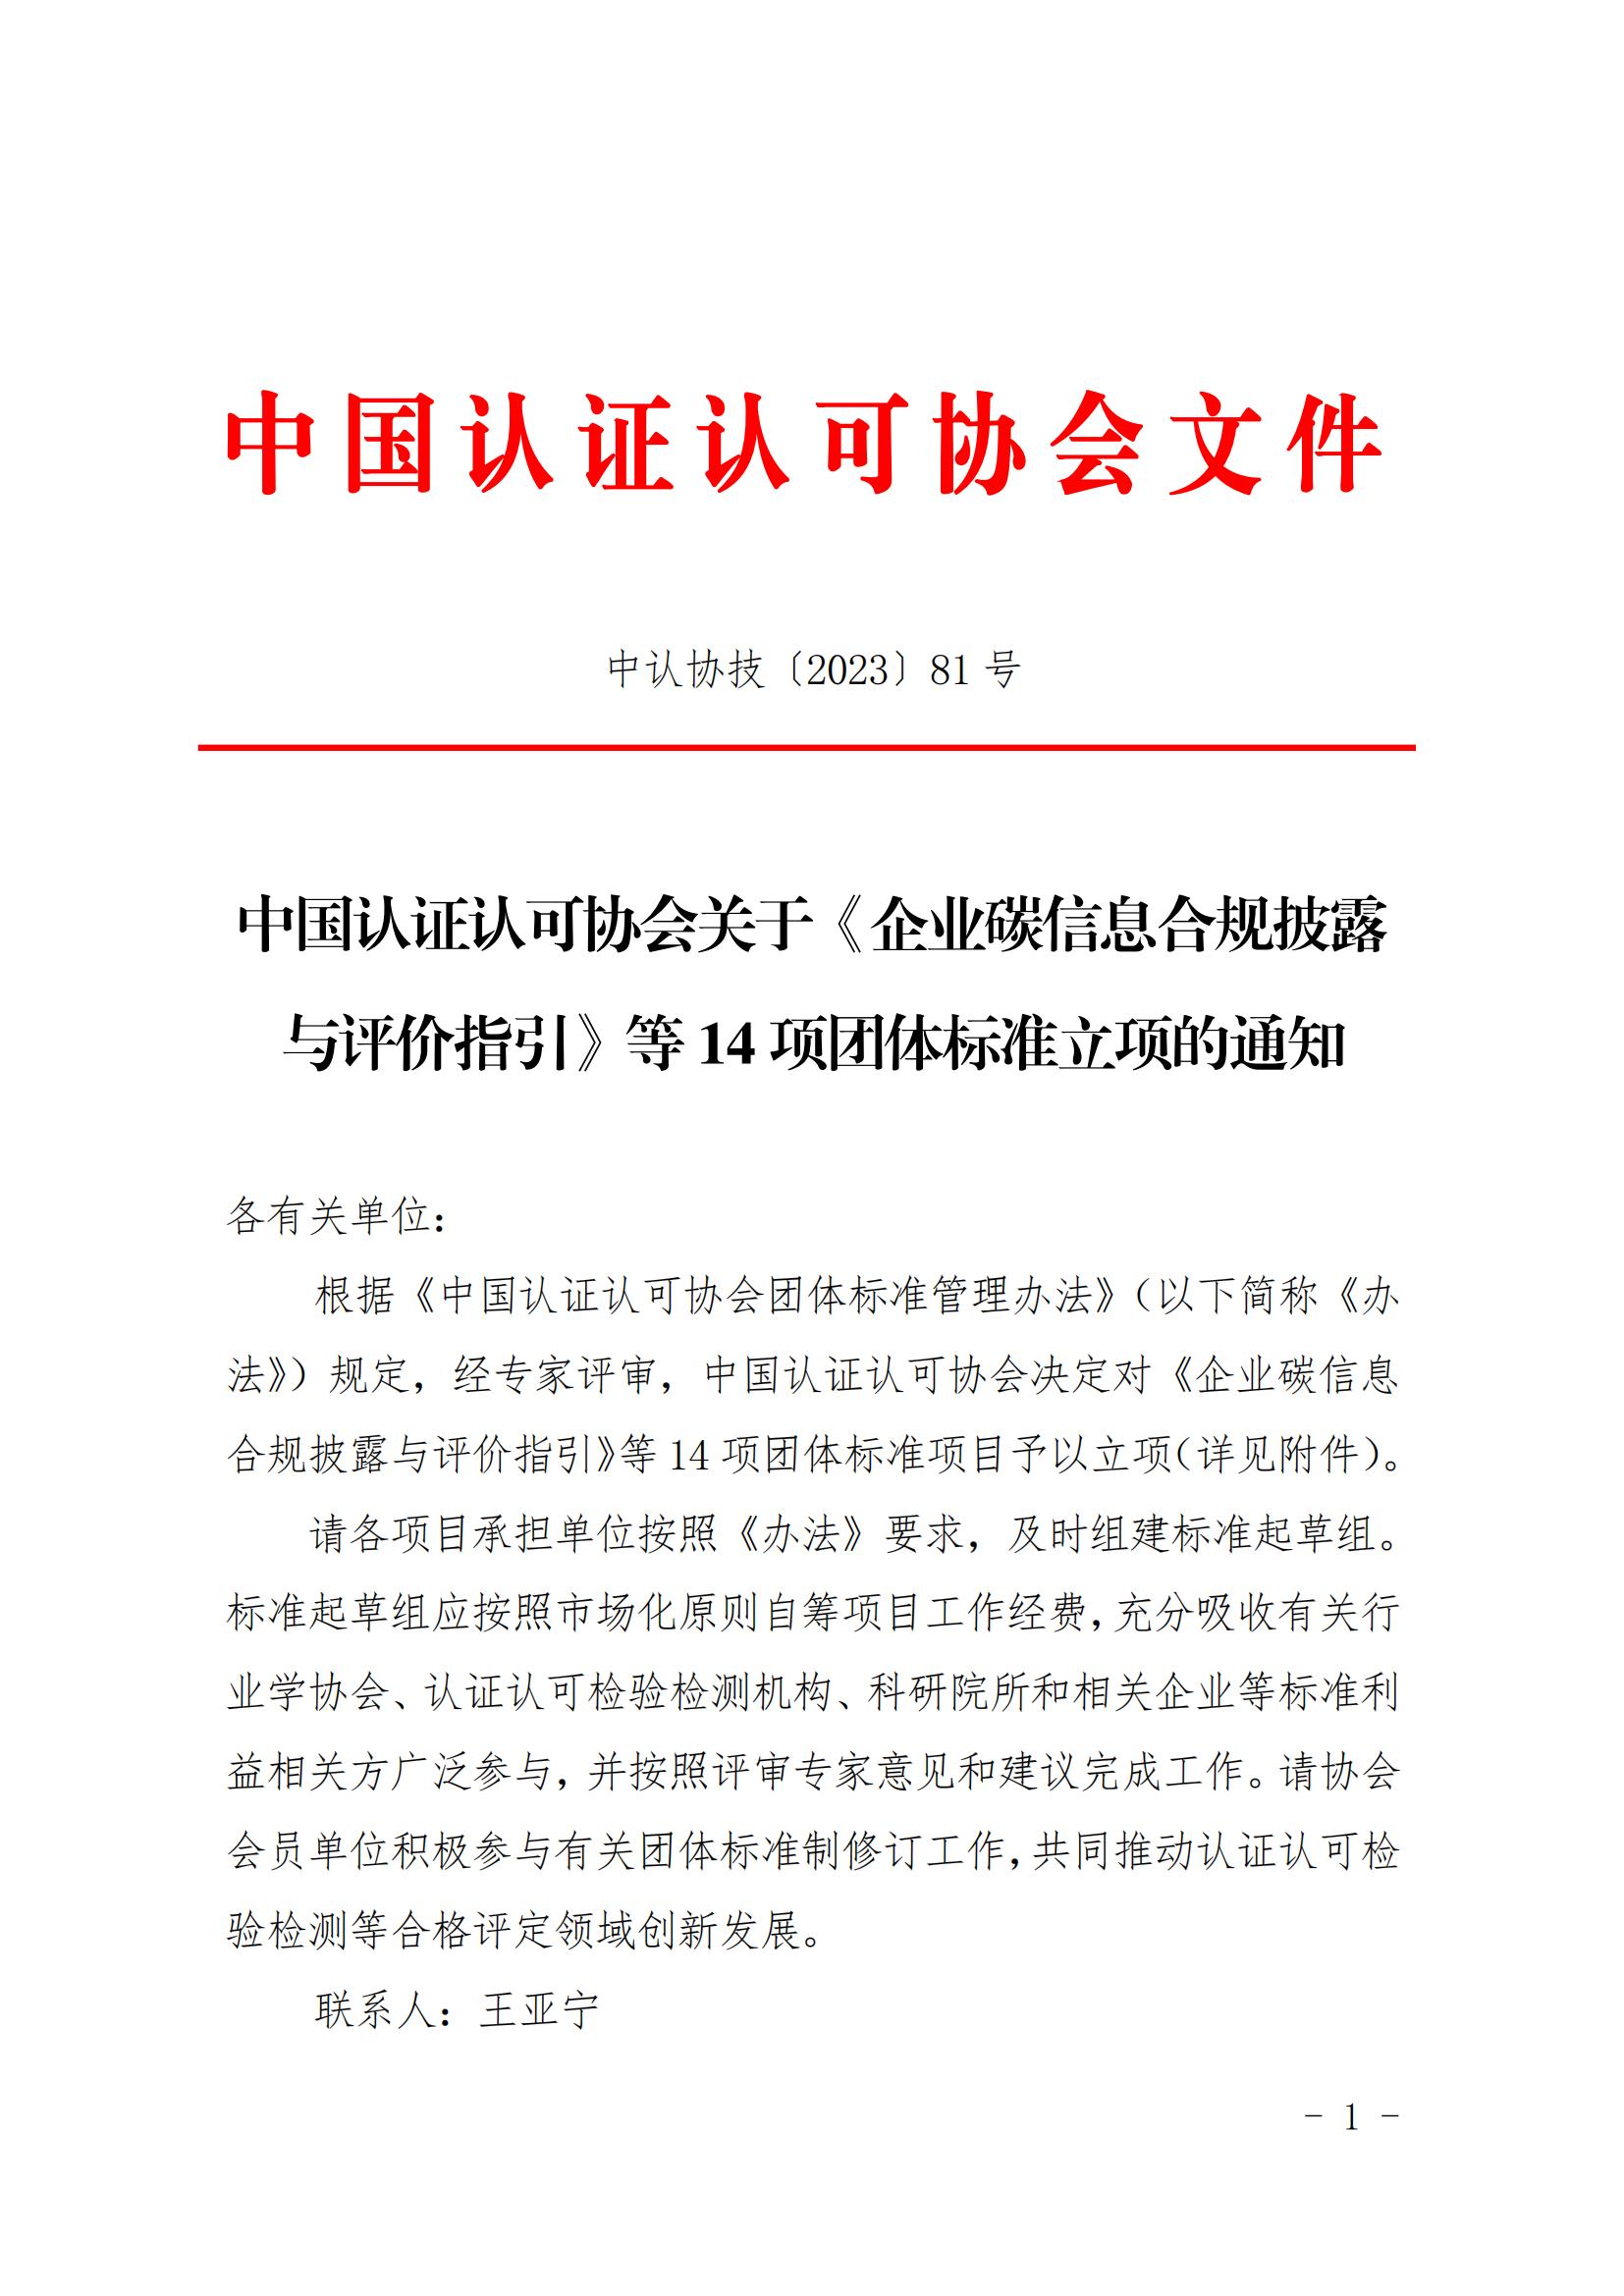 中國認證認可協會團體標準立項的通知_00.jpg